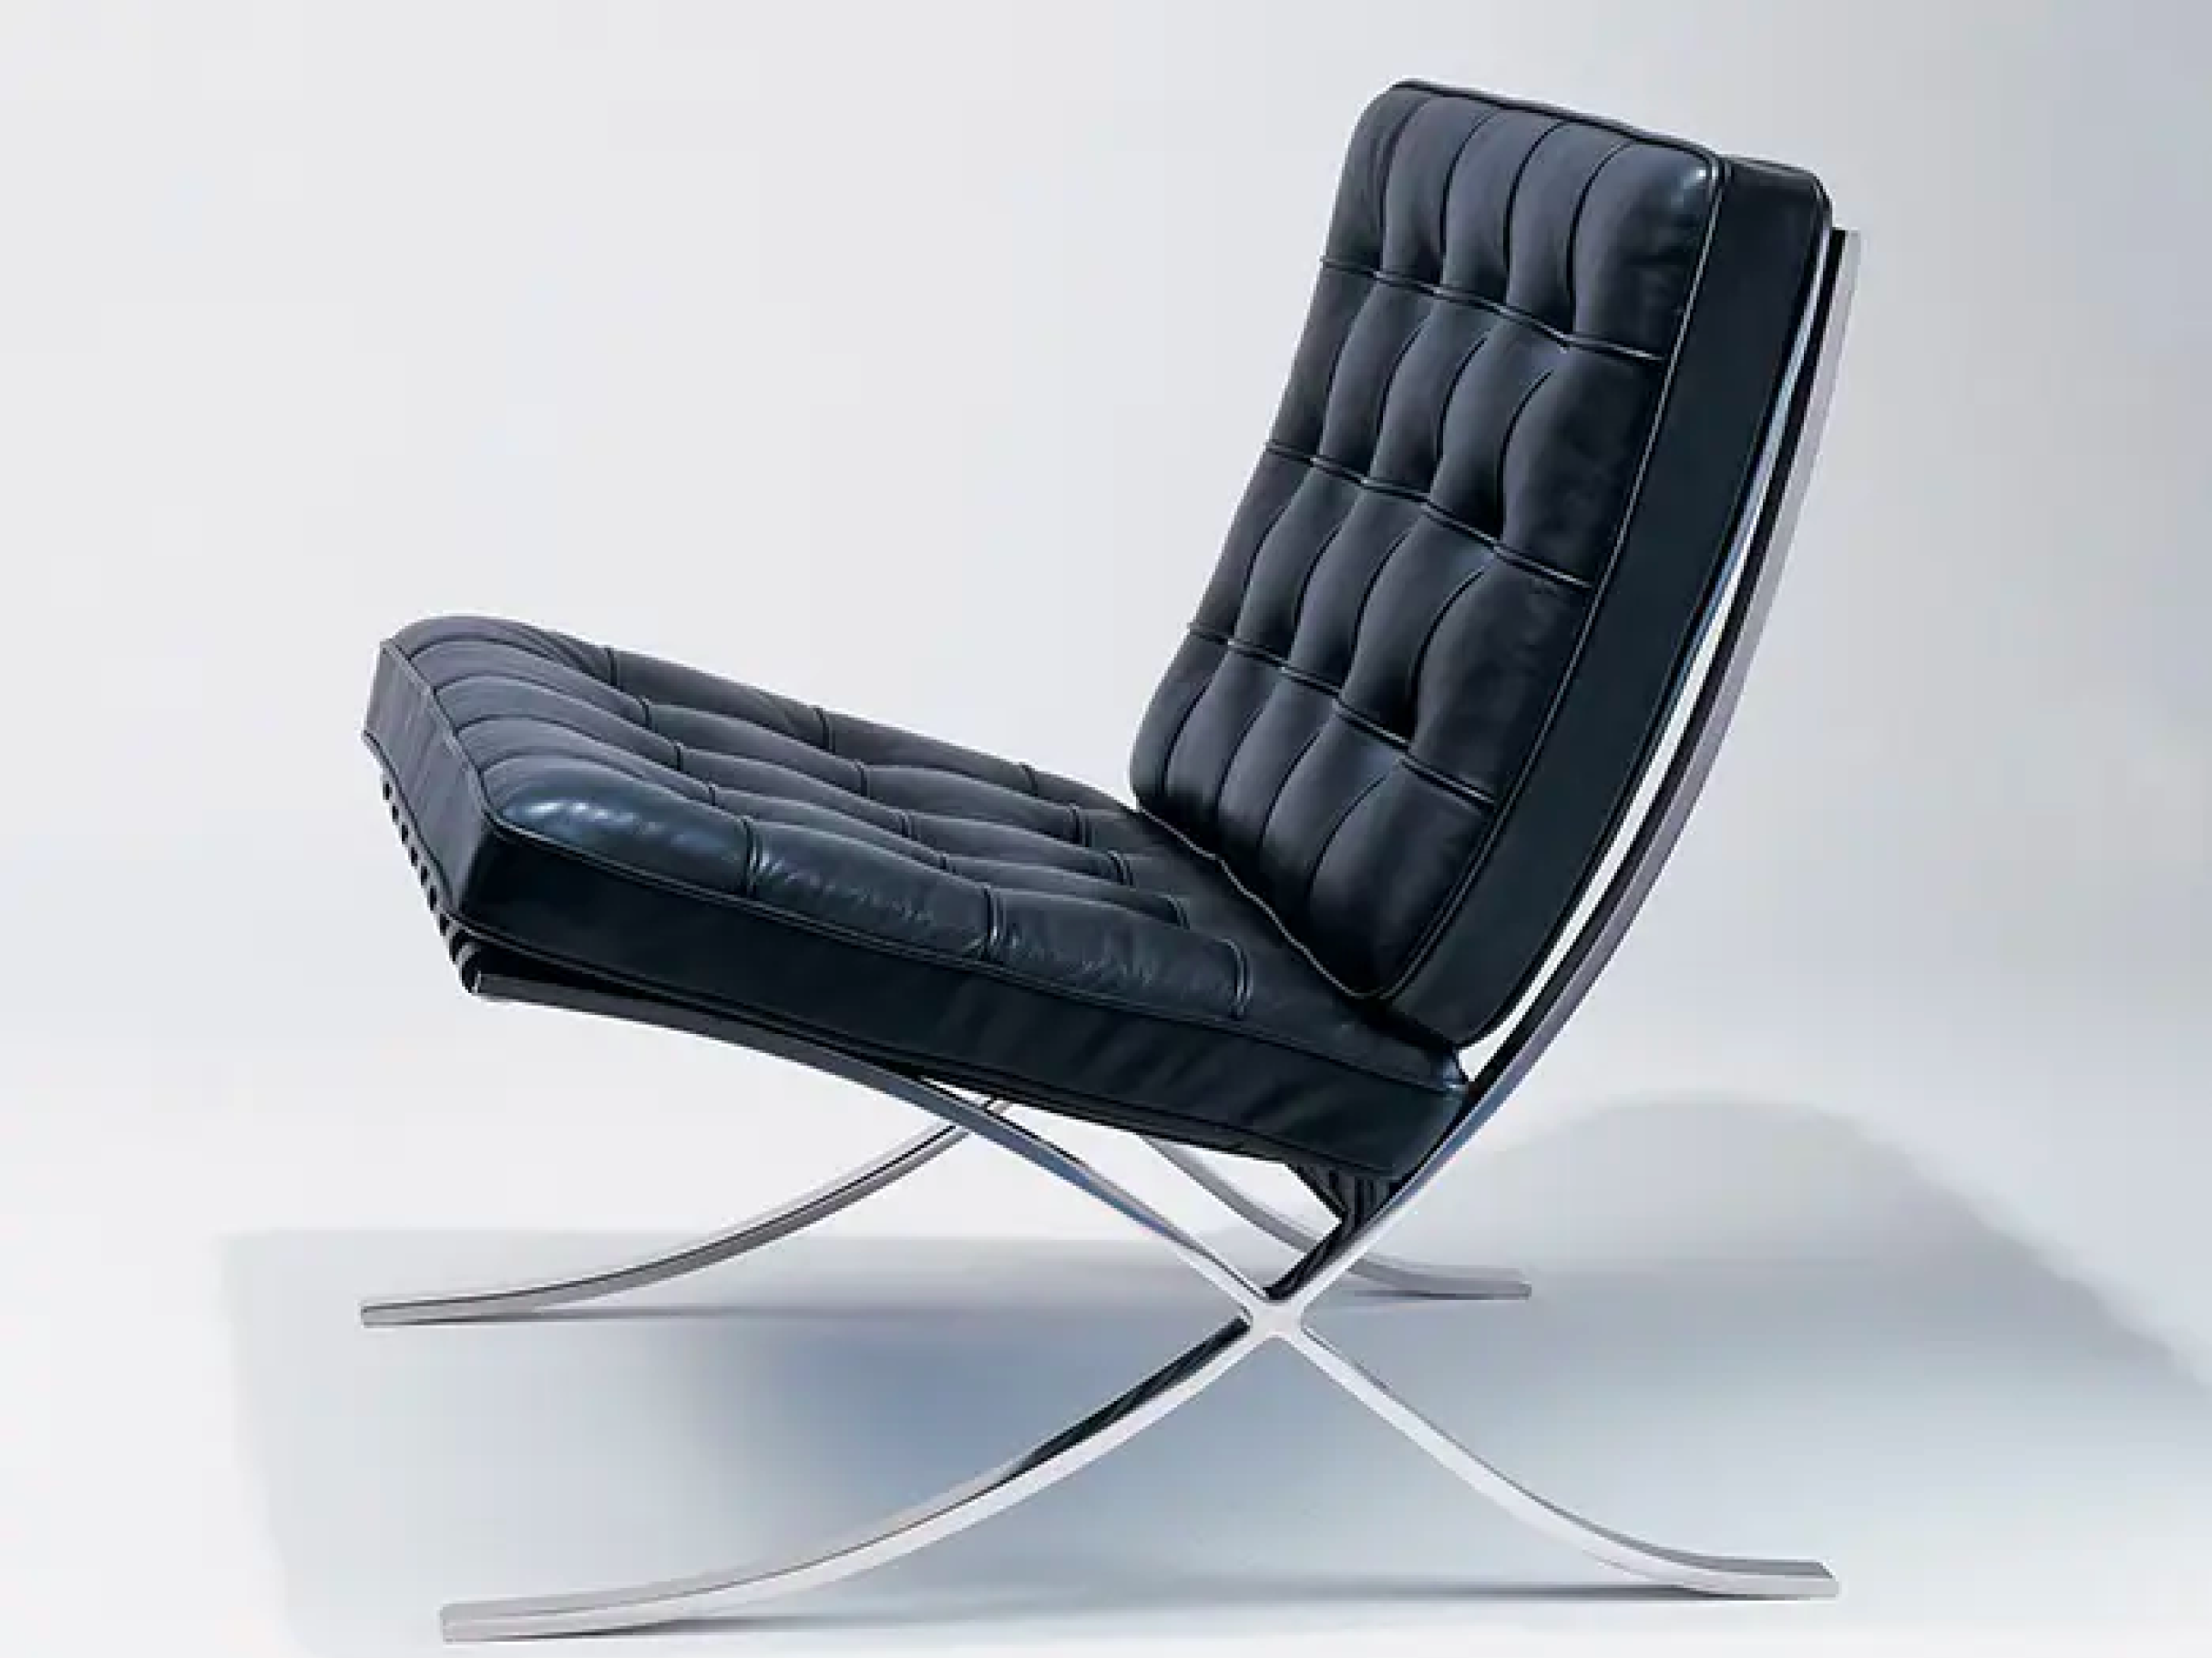 beu zondaar Simuleren Barcelona Chair van Knoll kopen - 70% Goedkoper dan Knoll | Whoppah